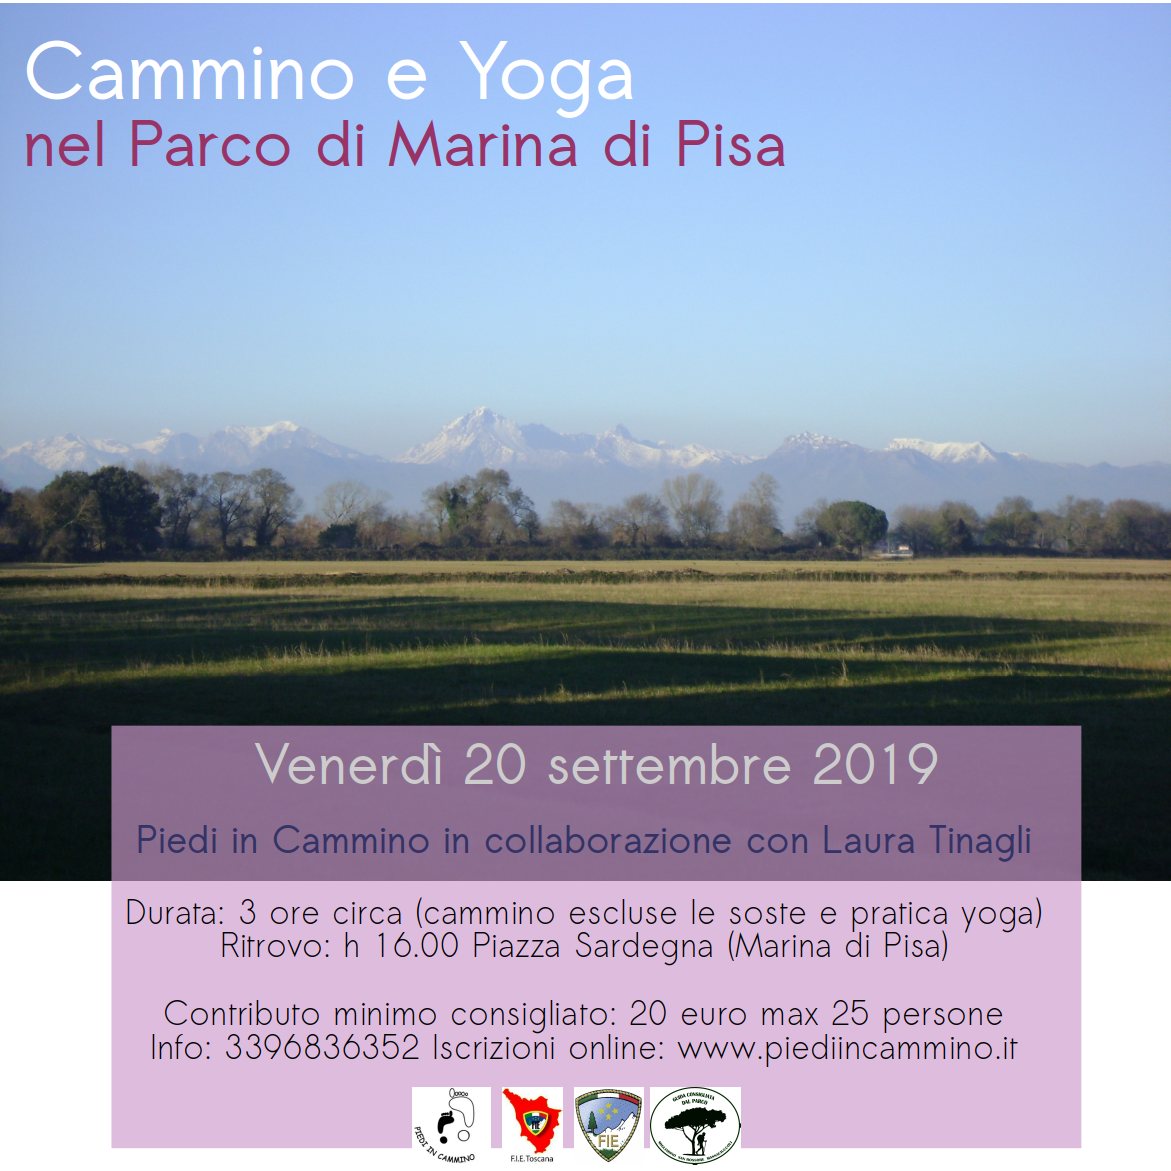 Cammino e Yoga nel Parco di Marina di Pisa